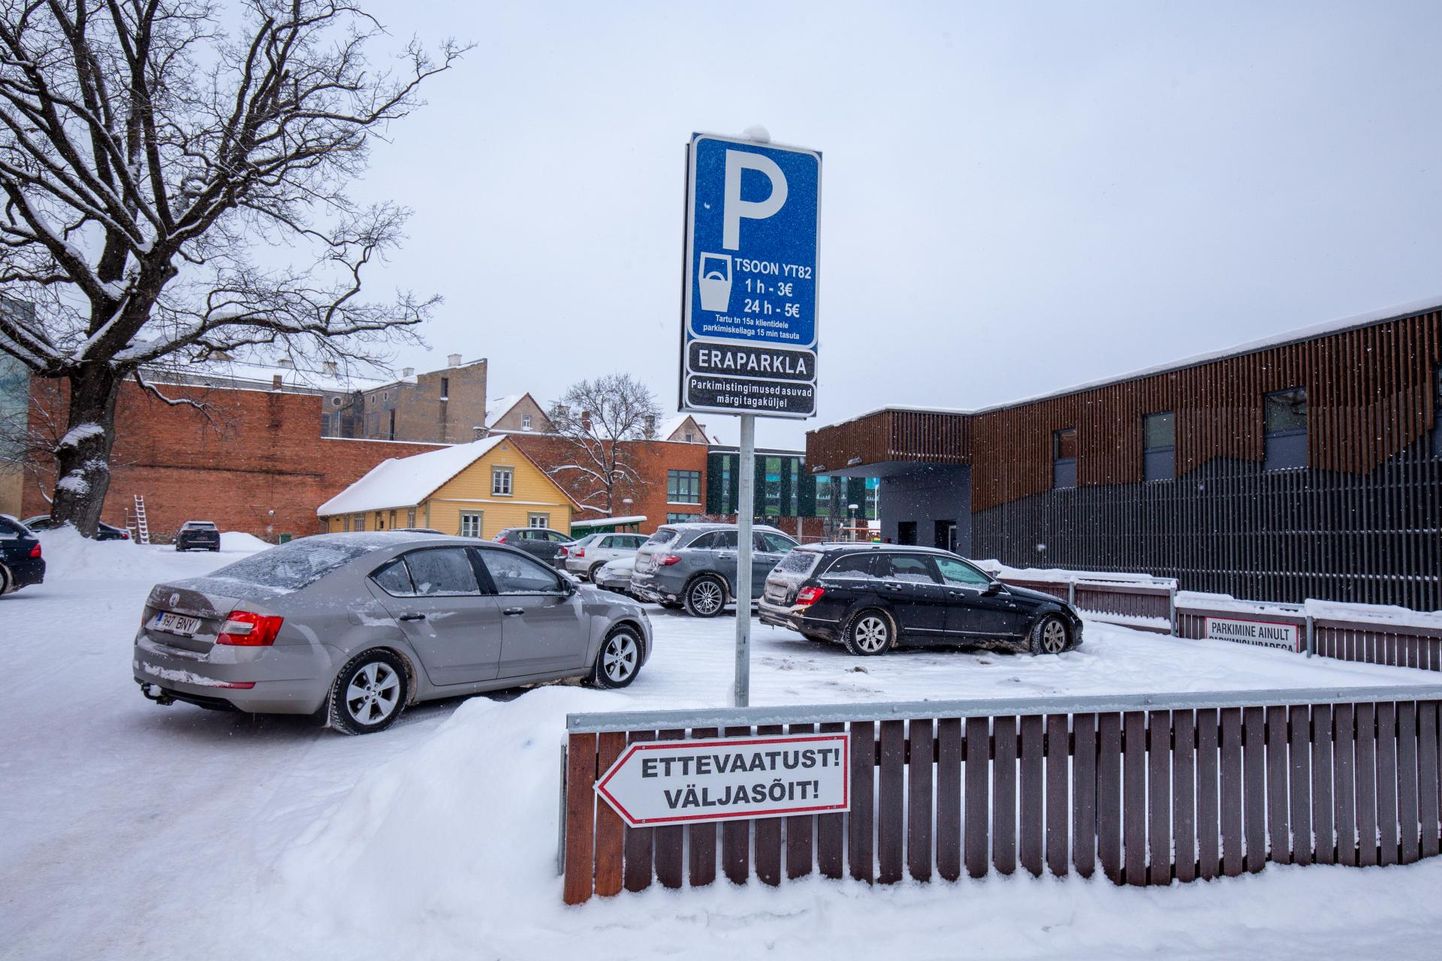 Viljandis Tartu tänav 15a taga olev hooviparkla on 1. detsembrist tasuline. Ühe tunni peatumise eest tuleb välja käia 3 eurot ning kui parkimine registreerimata jätta, tuleb tasuda 40 eurot trahvi.